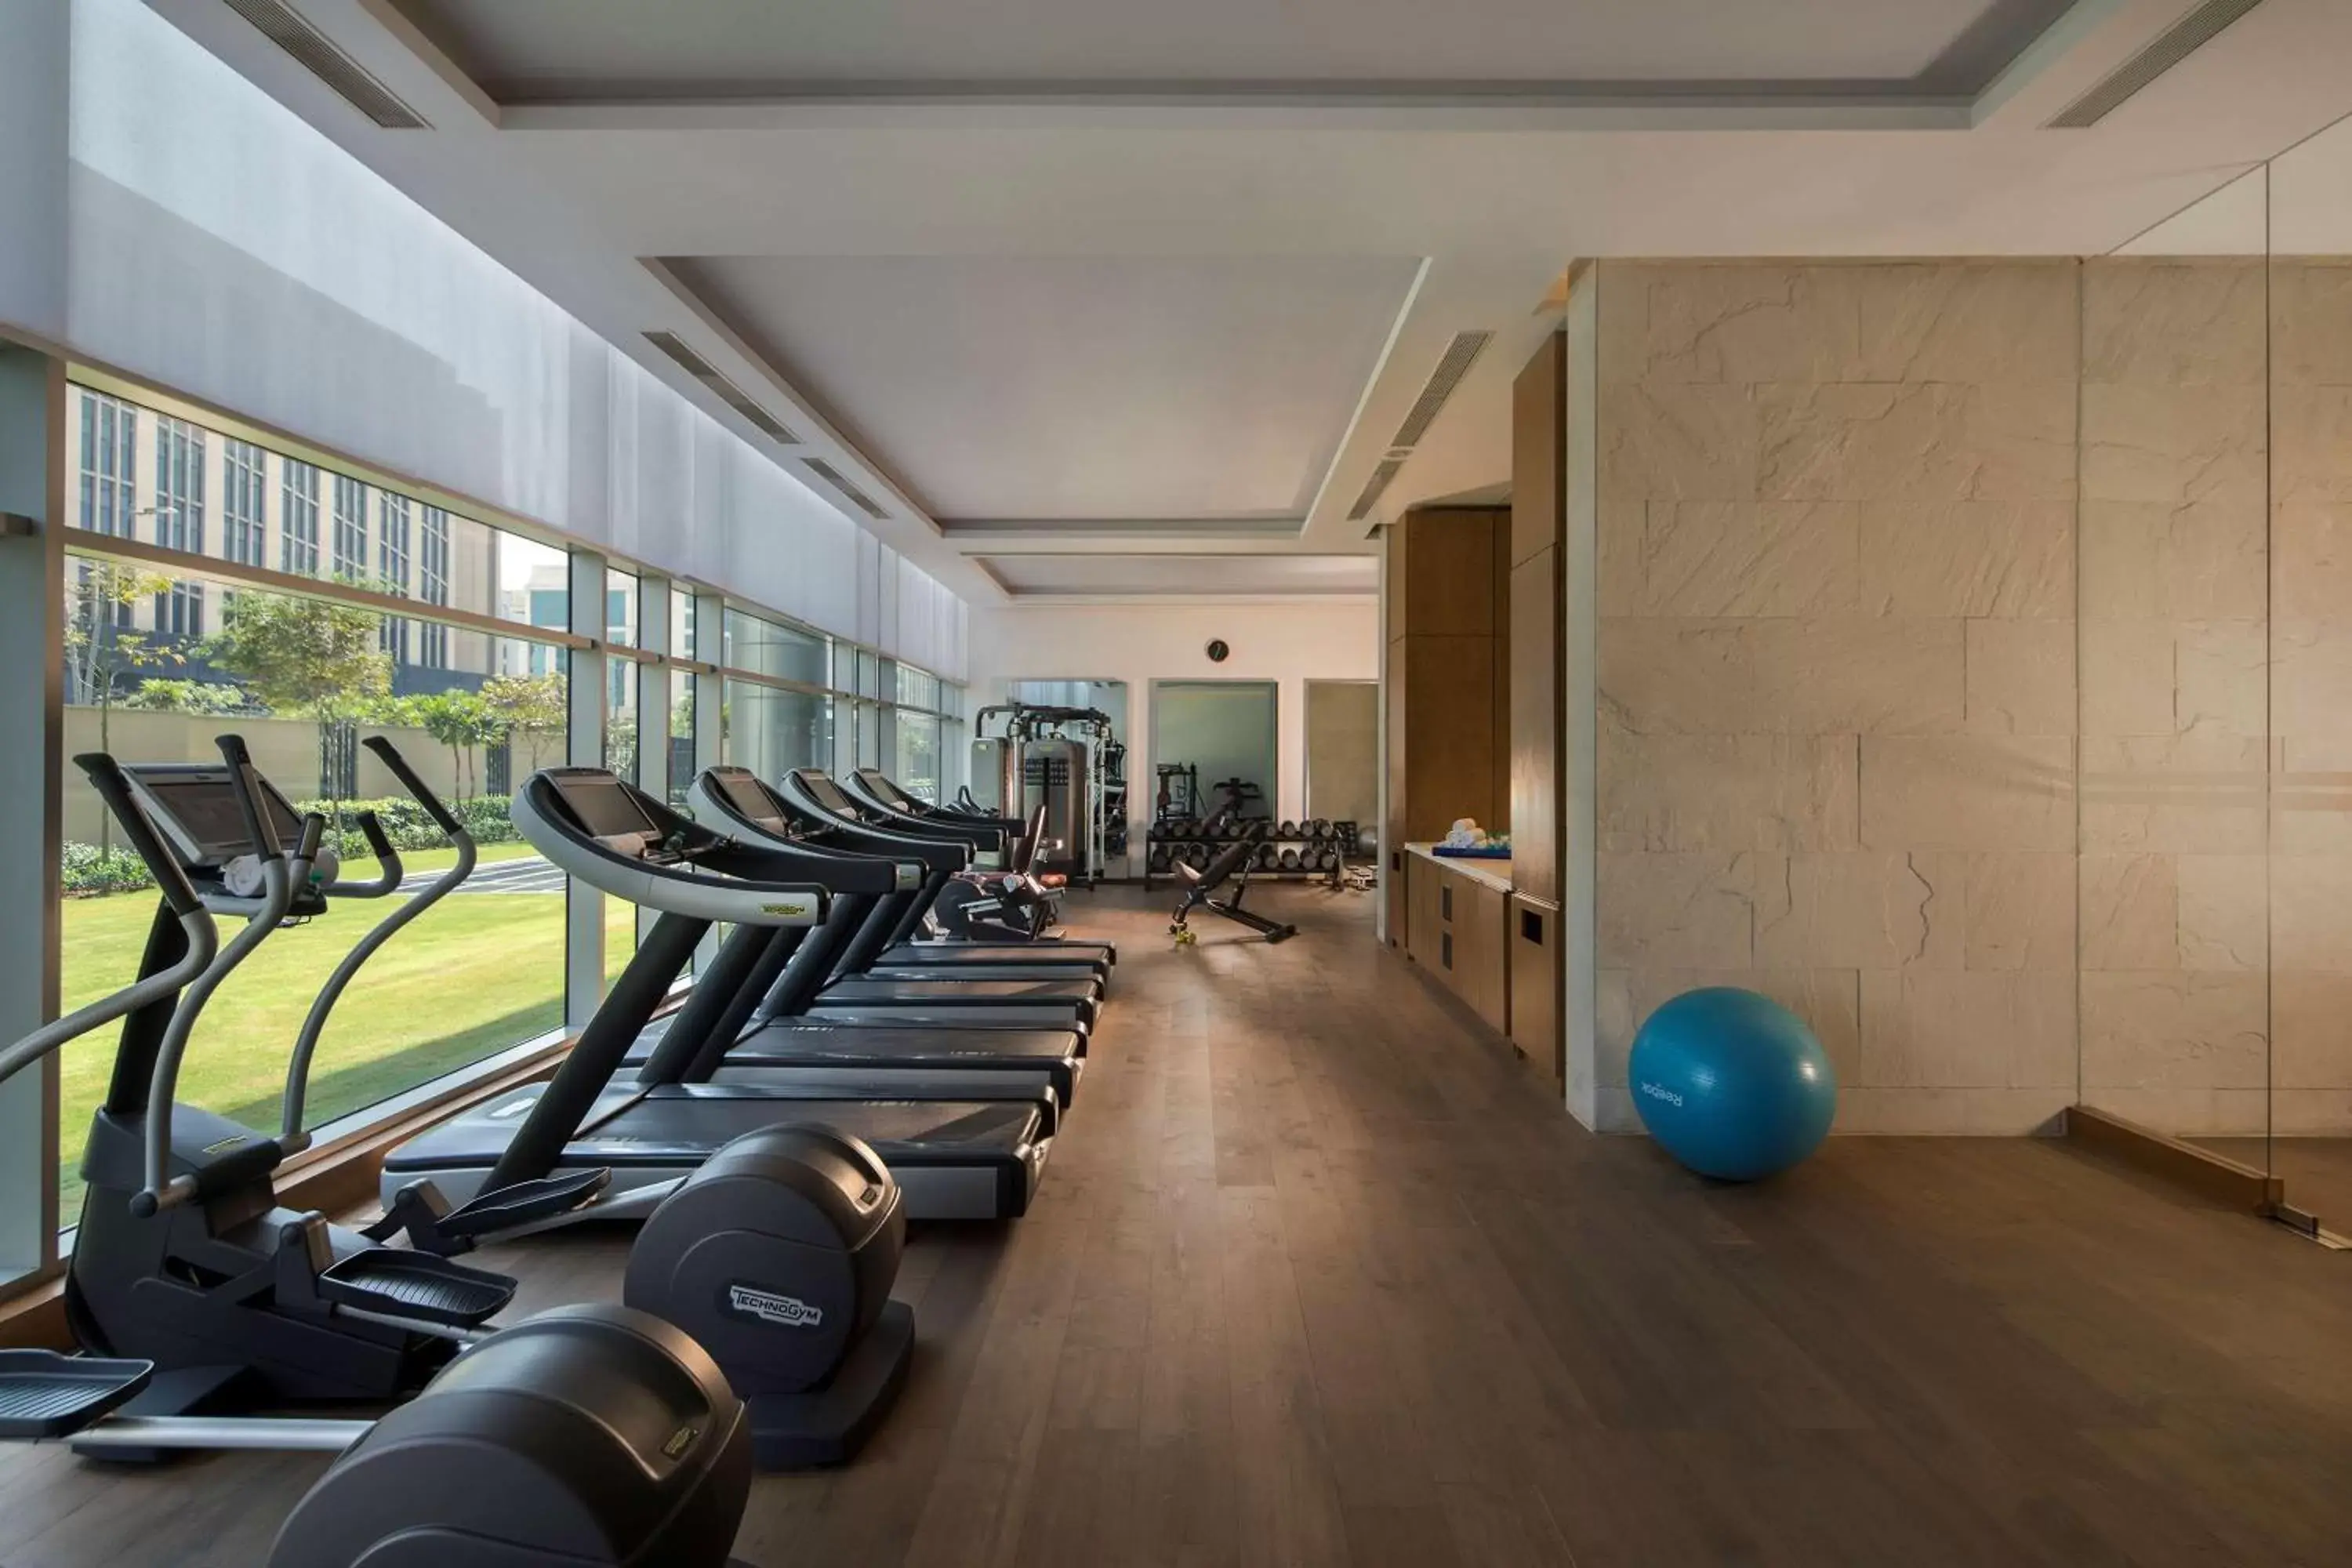 Fitness centre/facilities, Fitness Center/Facilities in Andaz Delhi Aerocity- Concept by Hyatt